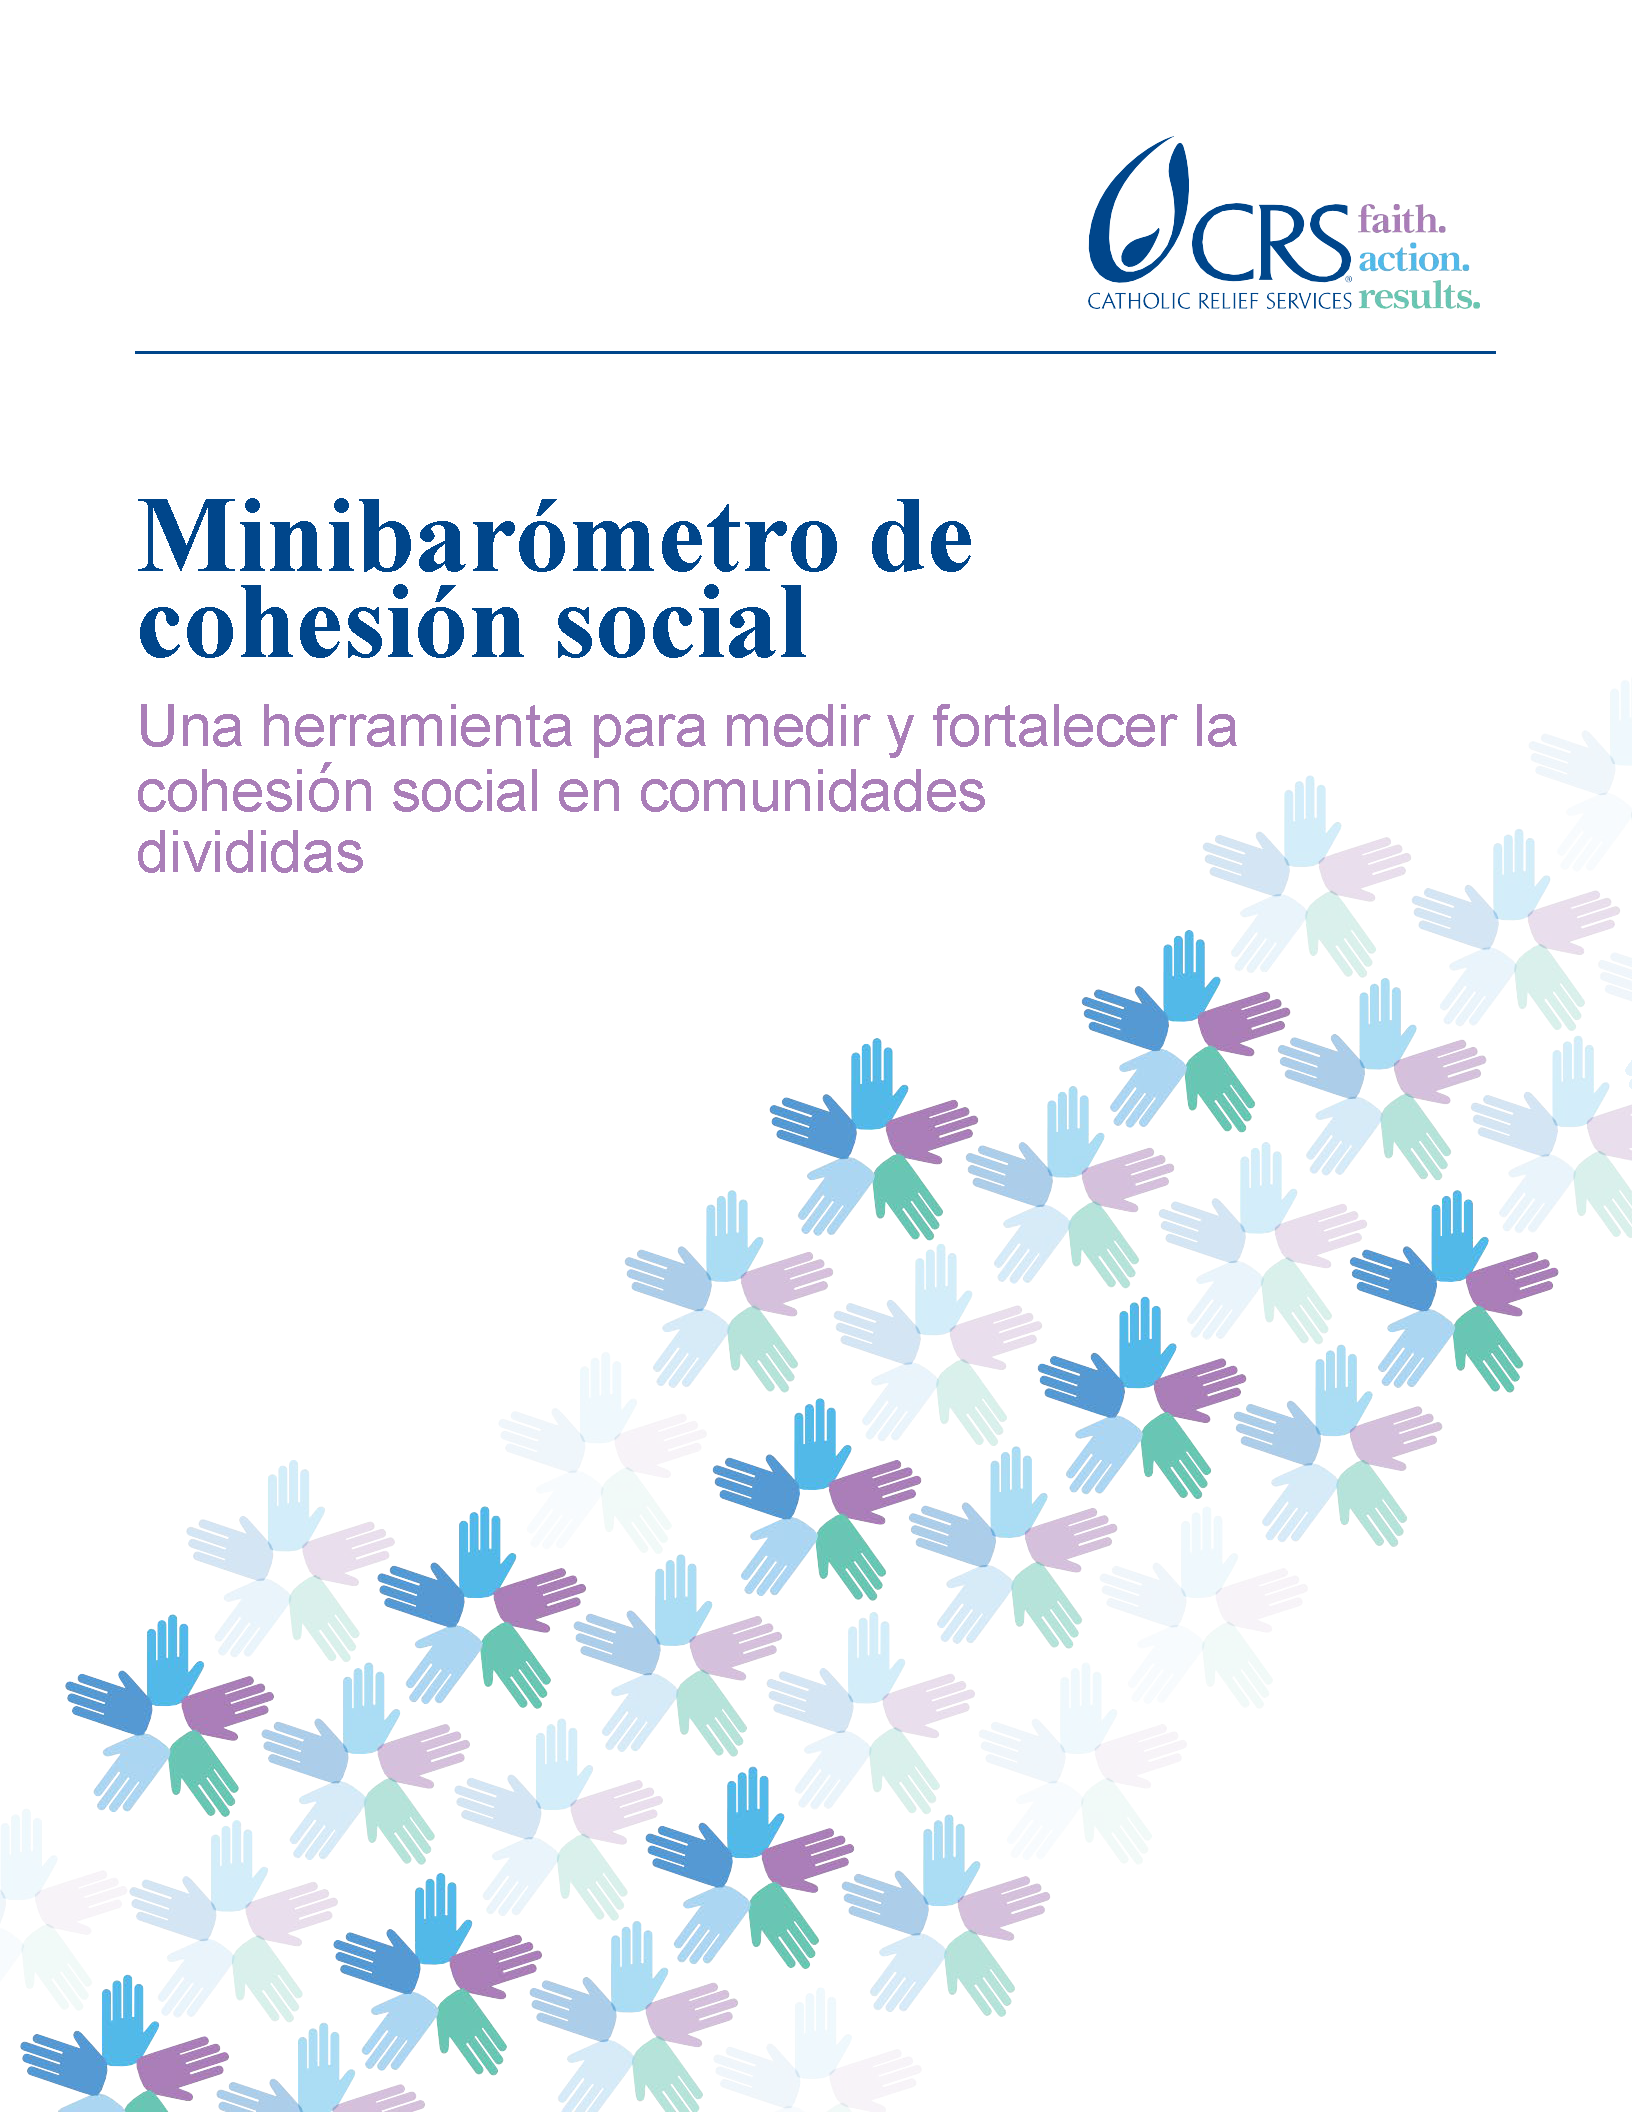 Cover page for Minibarómetro de cohesión social: Una herramienta para medir y fortalecer la cohesión social en comunidades divididas